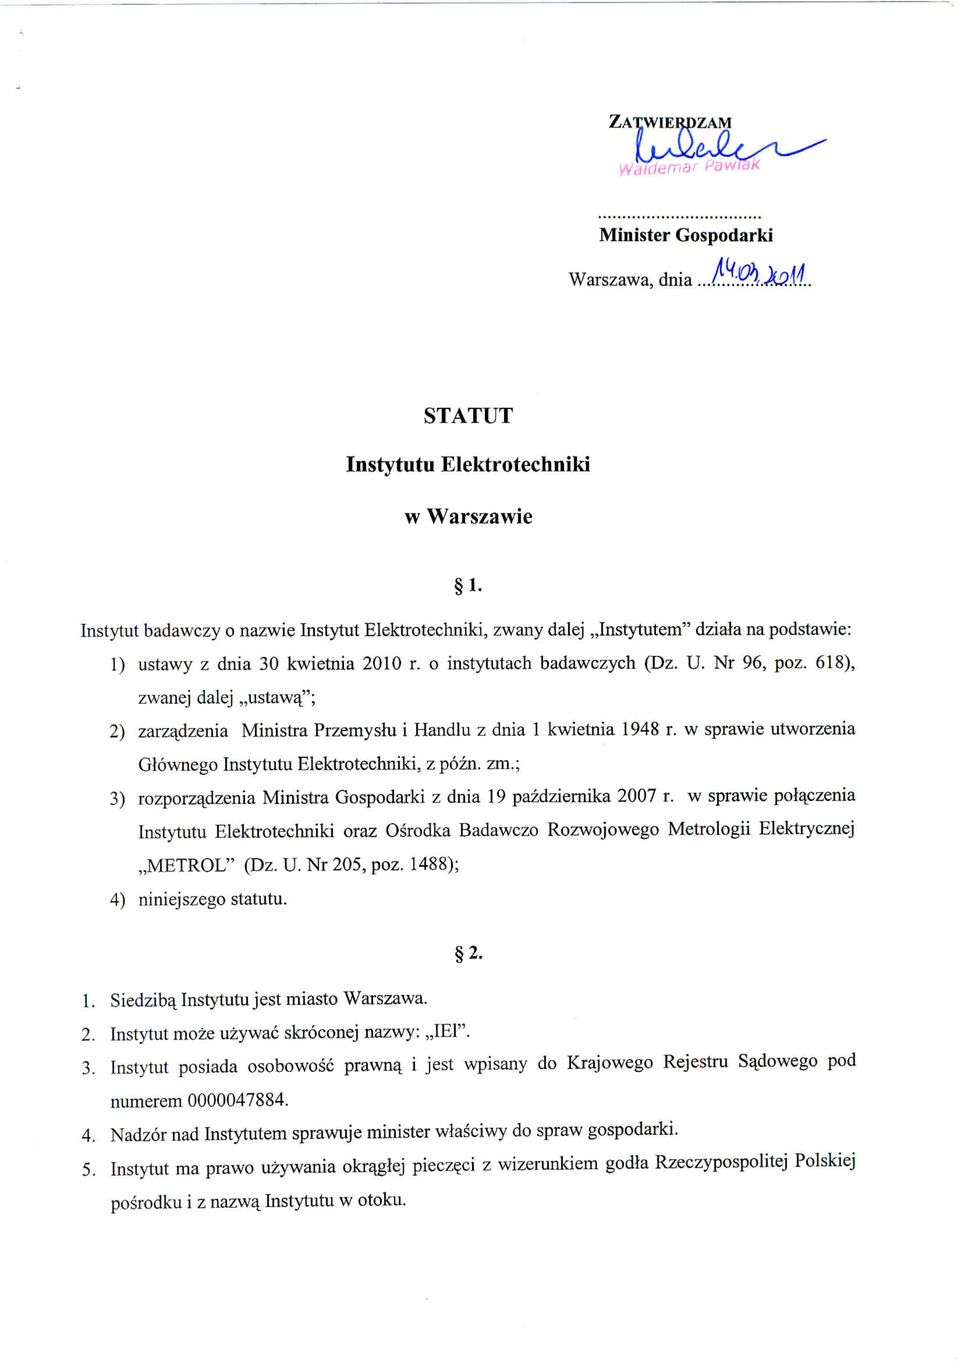 w sprawie utworzenia Glownego Instytutu Elektrotechniki, z pozn. zm.; 3) rozporzajdzenia Ministra Gospodarki z dnia 19 pazdziernika 2007 r.